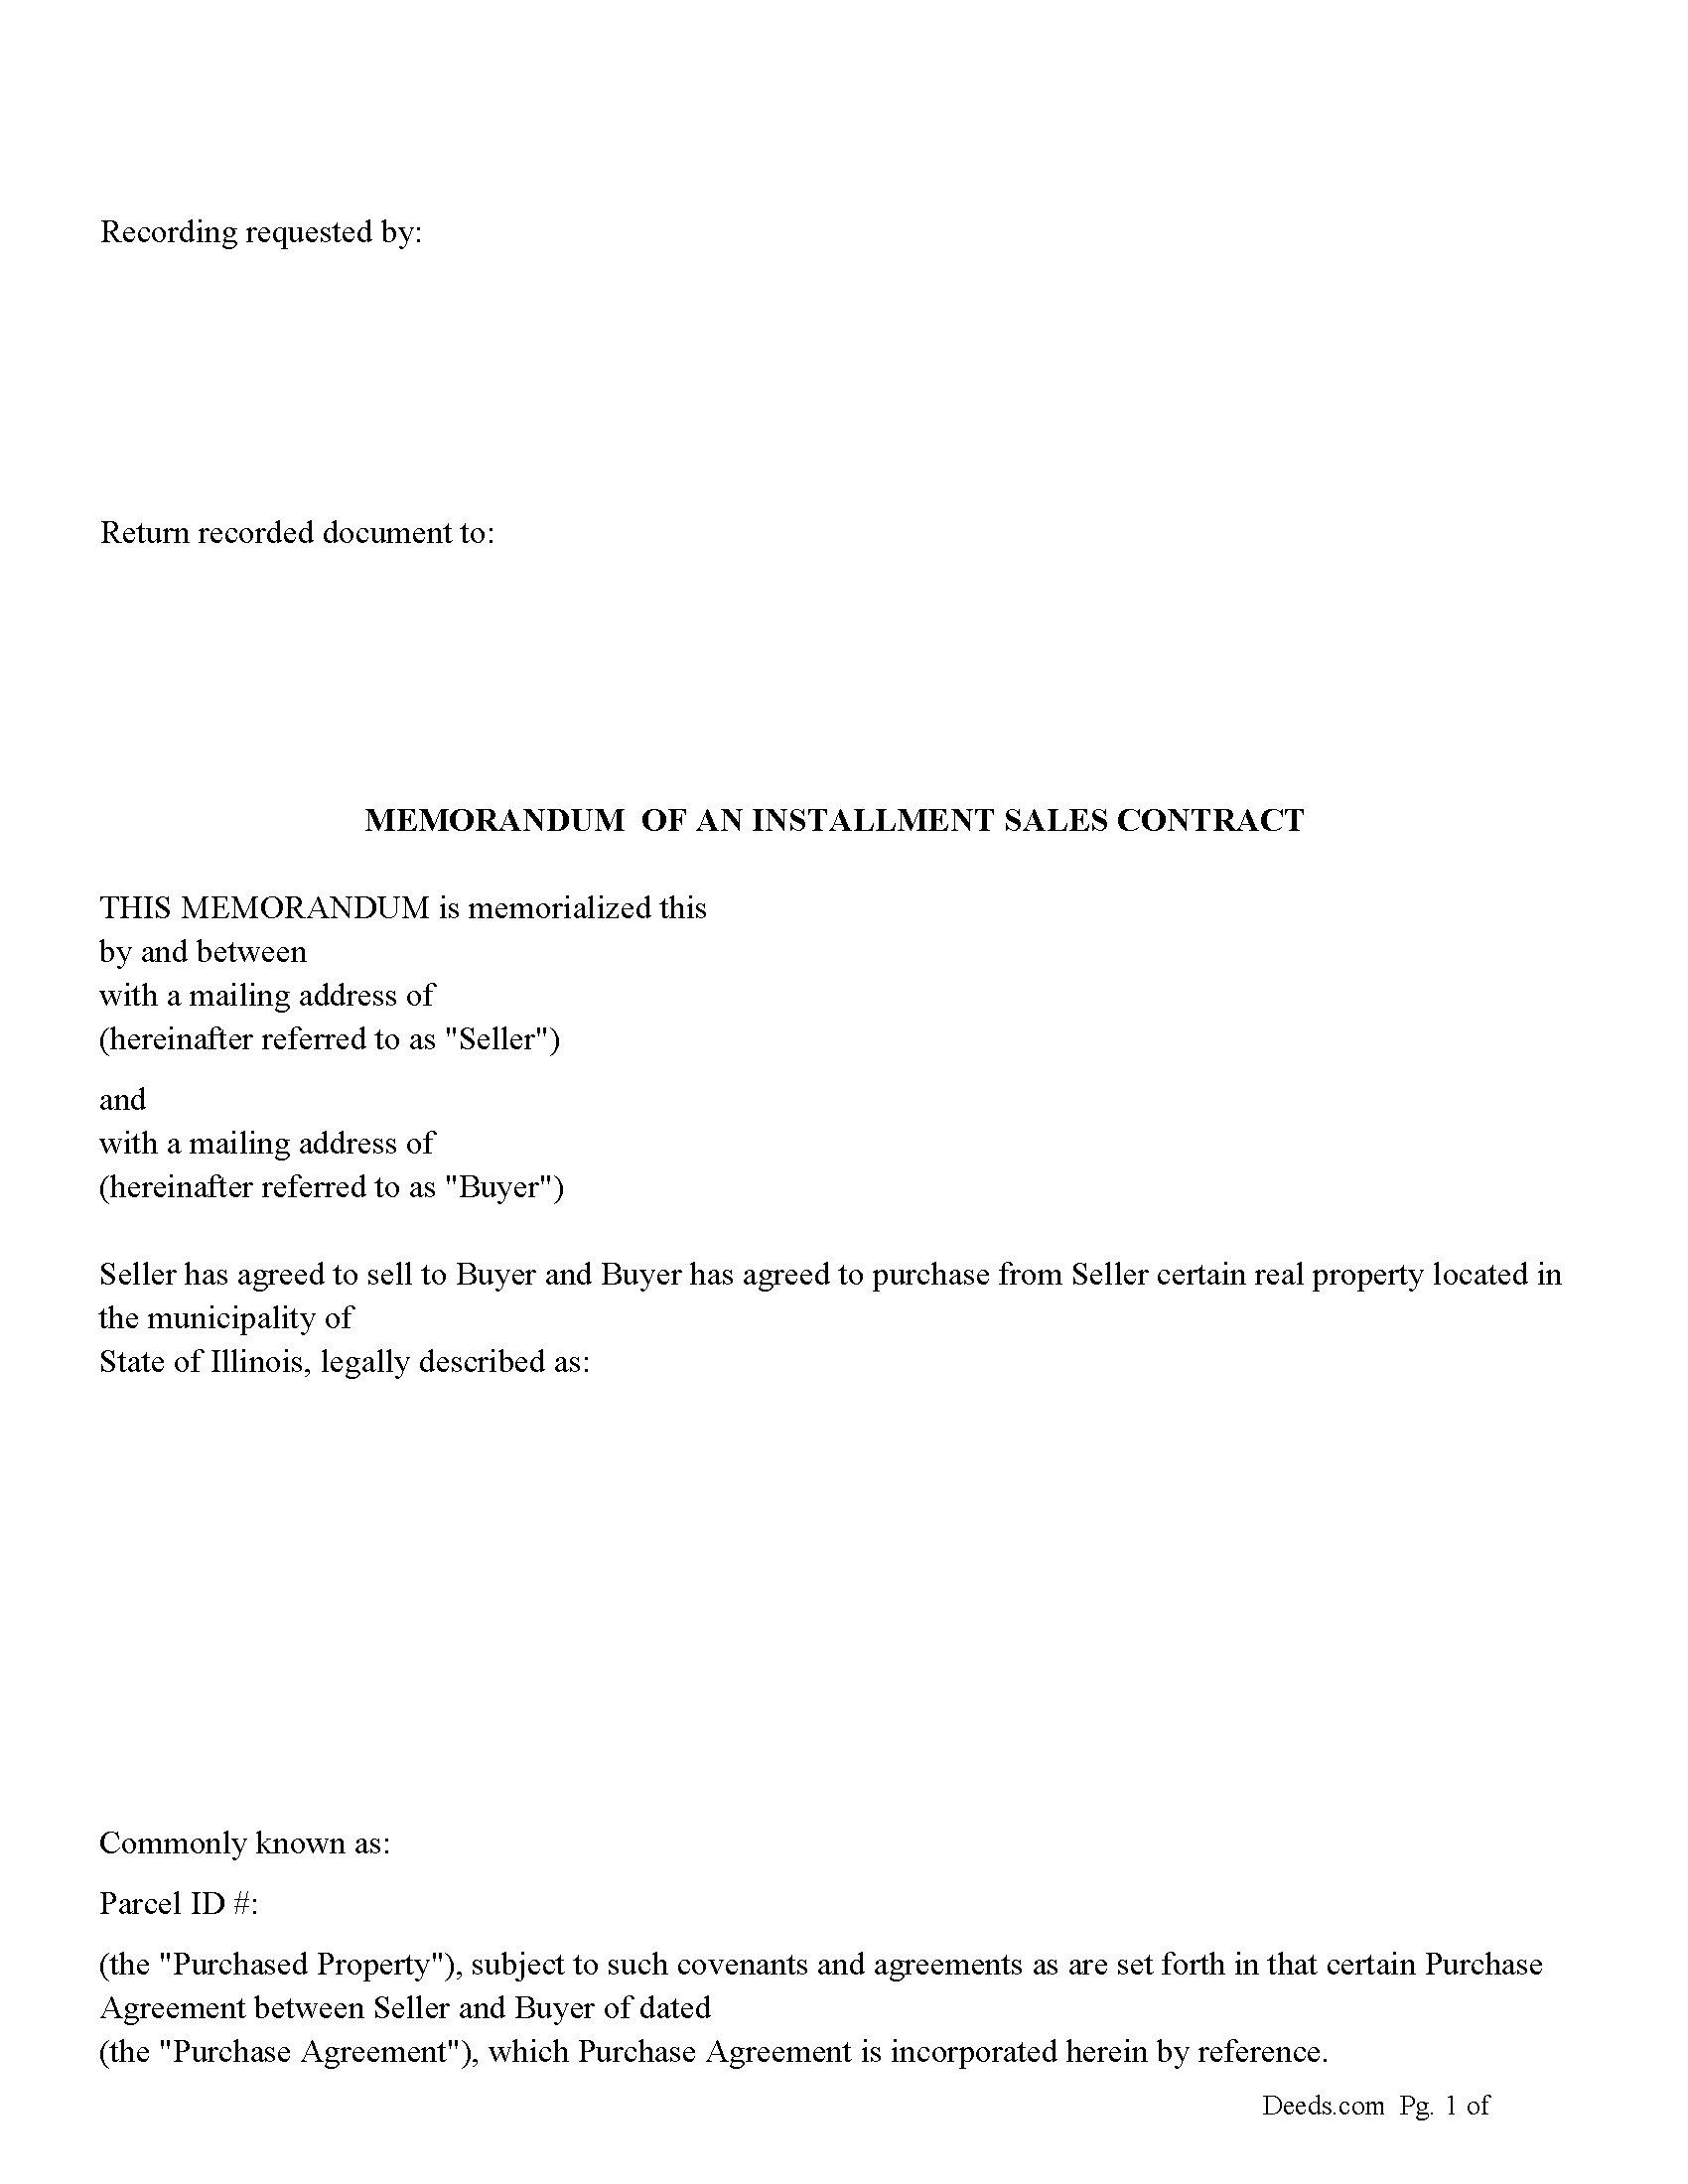 Clinton County Memorandum of an Installment Sales Contract Form